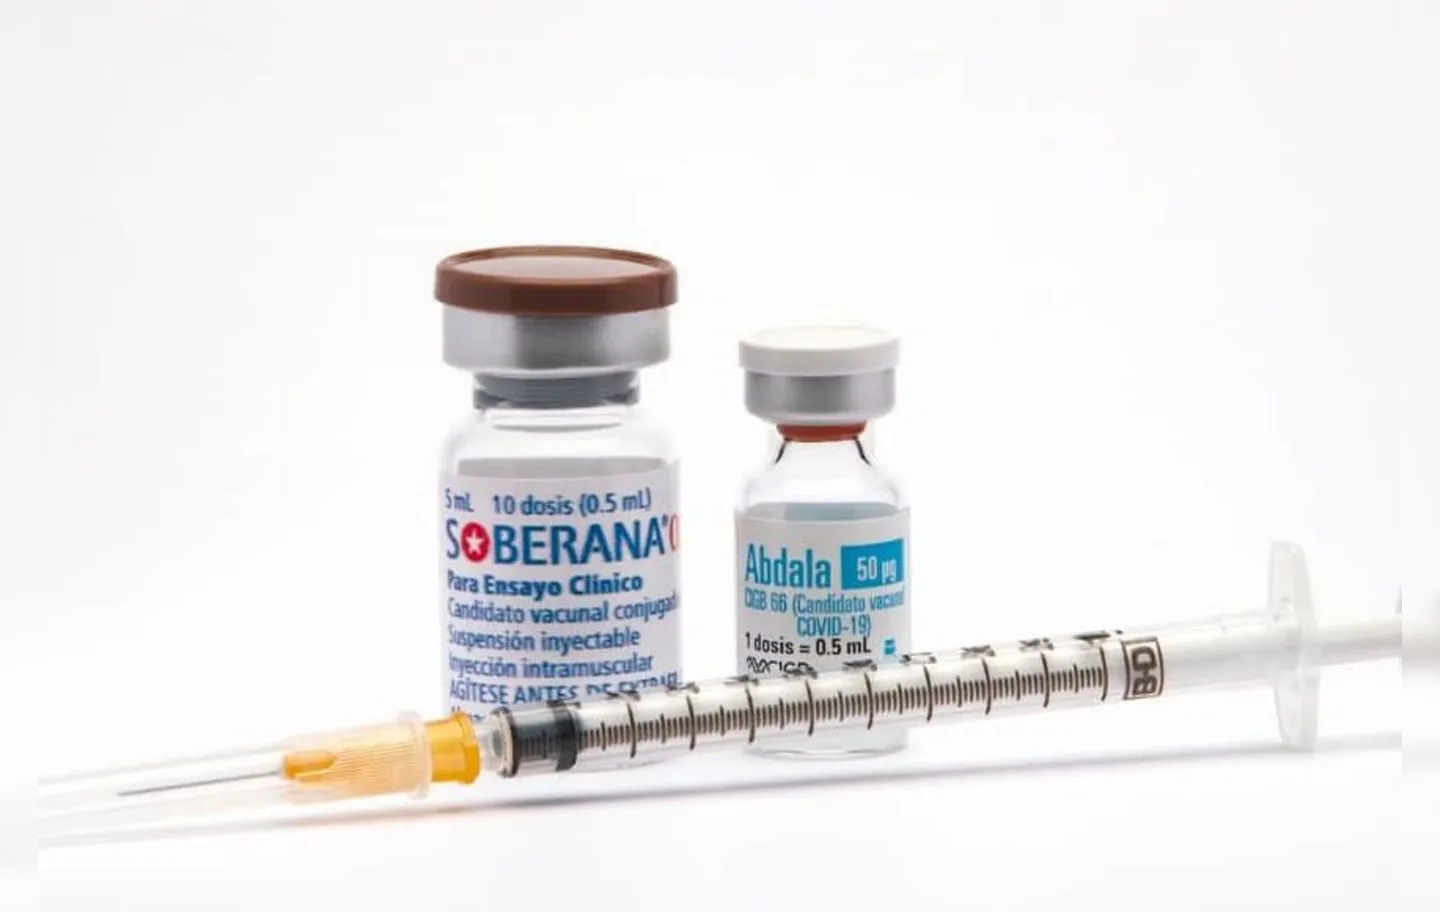 Imunizante Abdala é desenvolvido pelo Instituto Finlay de Vacinas e pelo CIGB | Reprodução | Twitter: @DiazCanelB